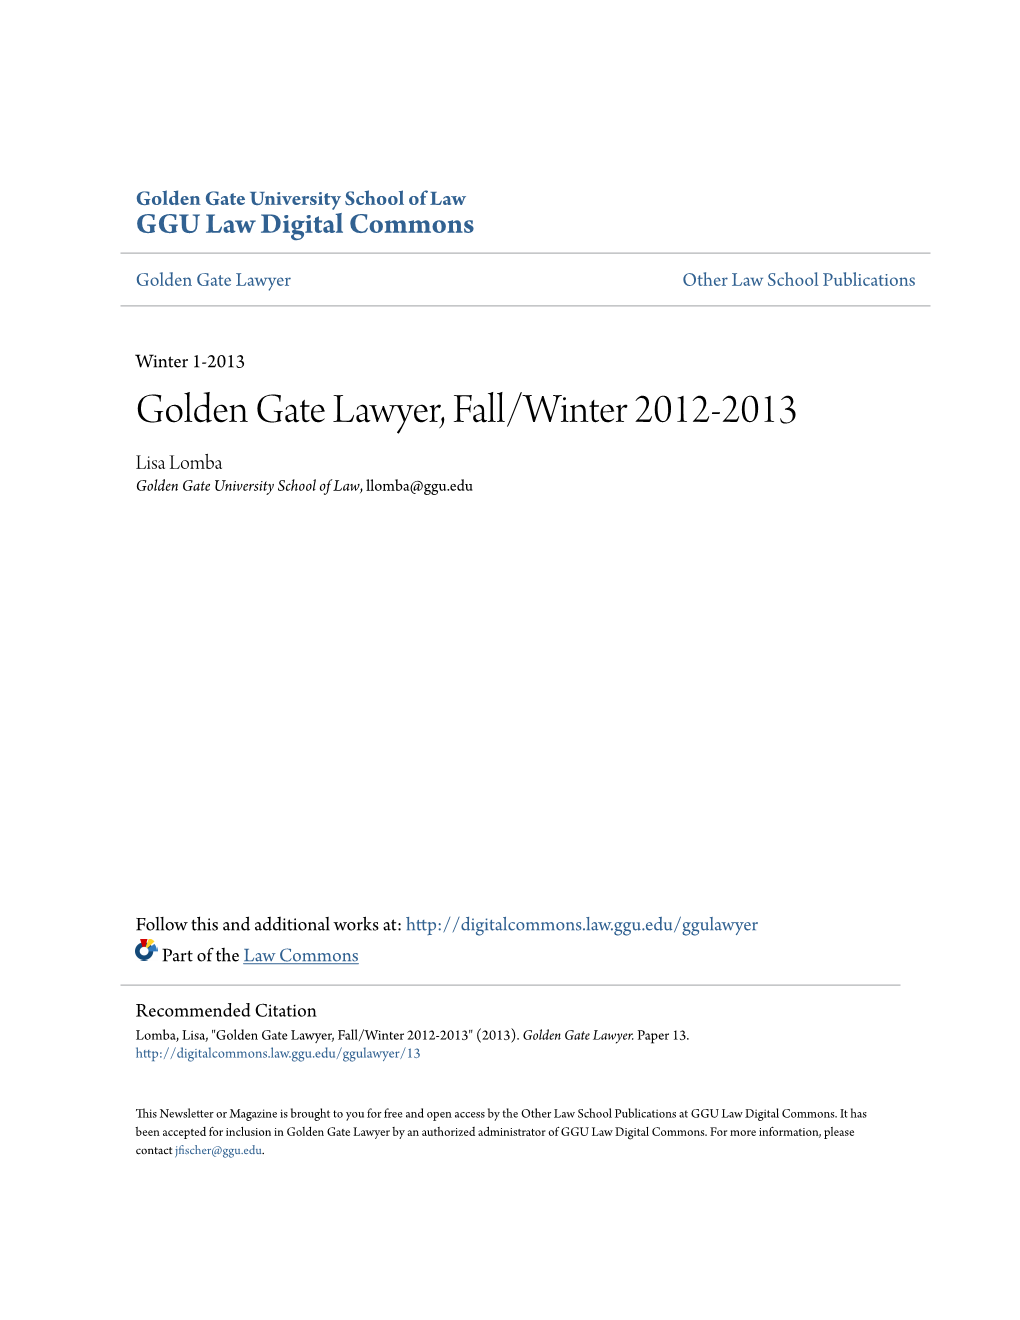 Golden Gate Lawyer, Fall/Winter 2012-2013 Lisa Lomba Golden Gate University School of Law, Llomba@Ggu.Edu